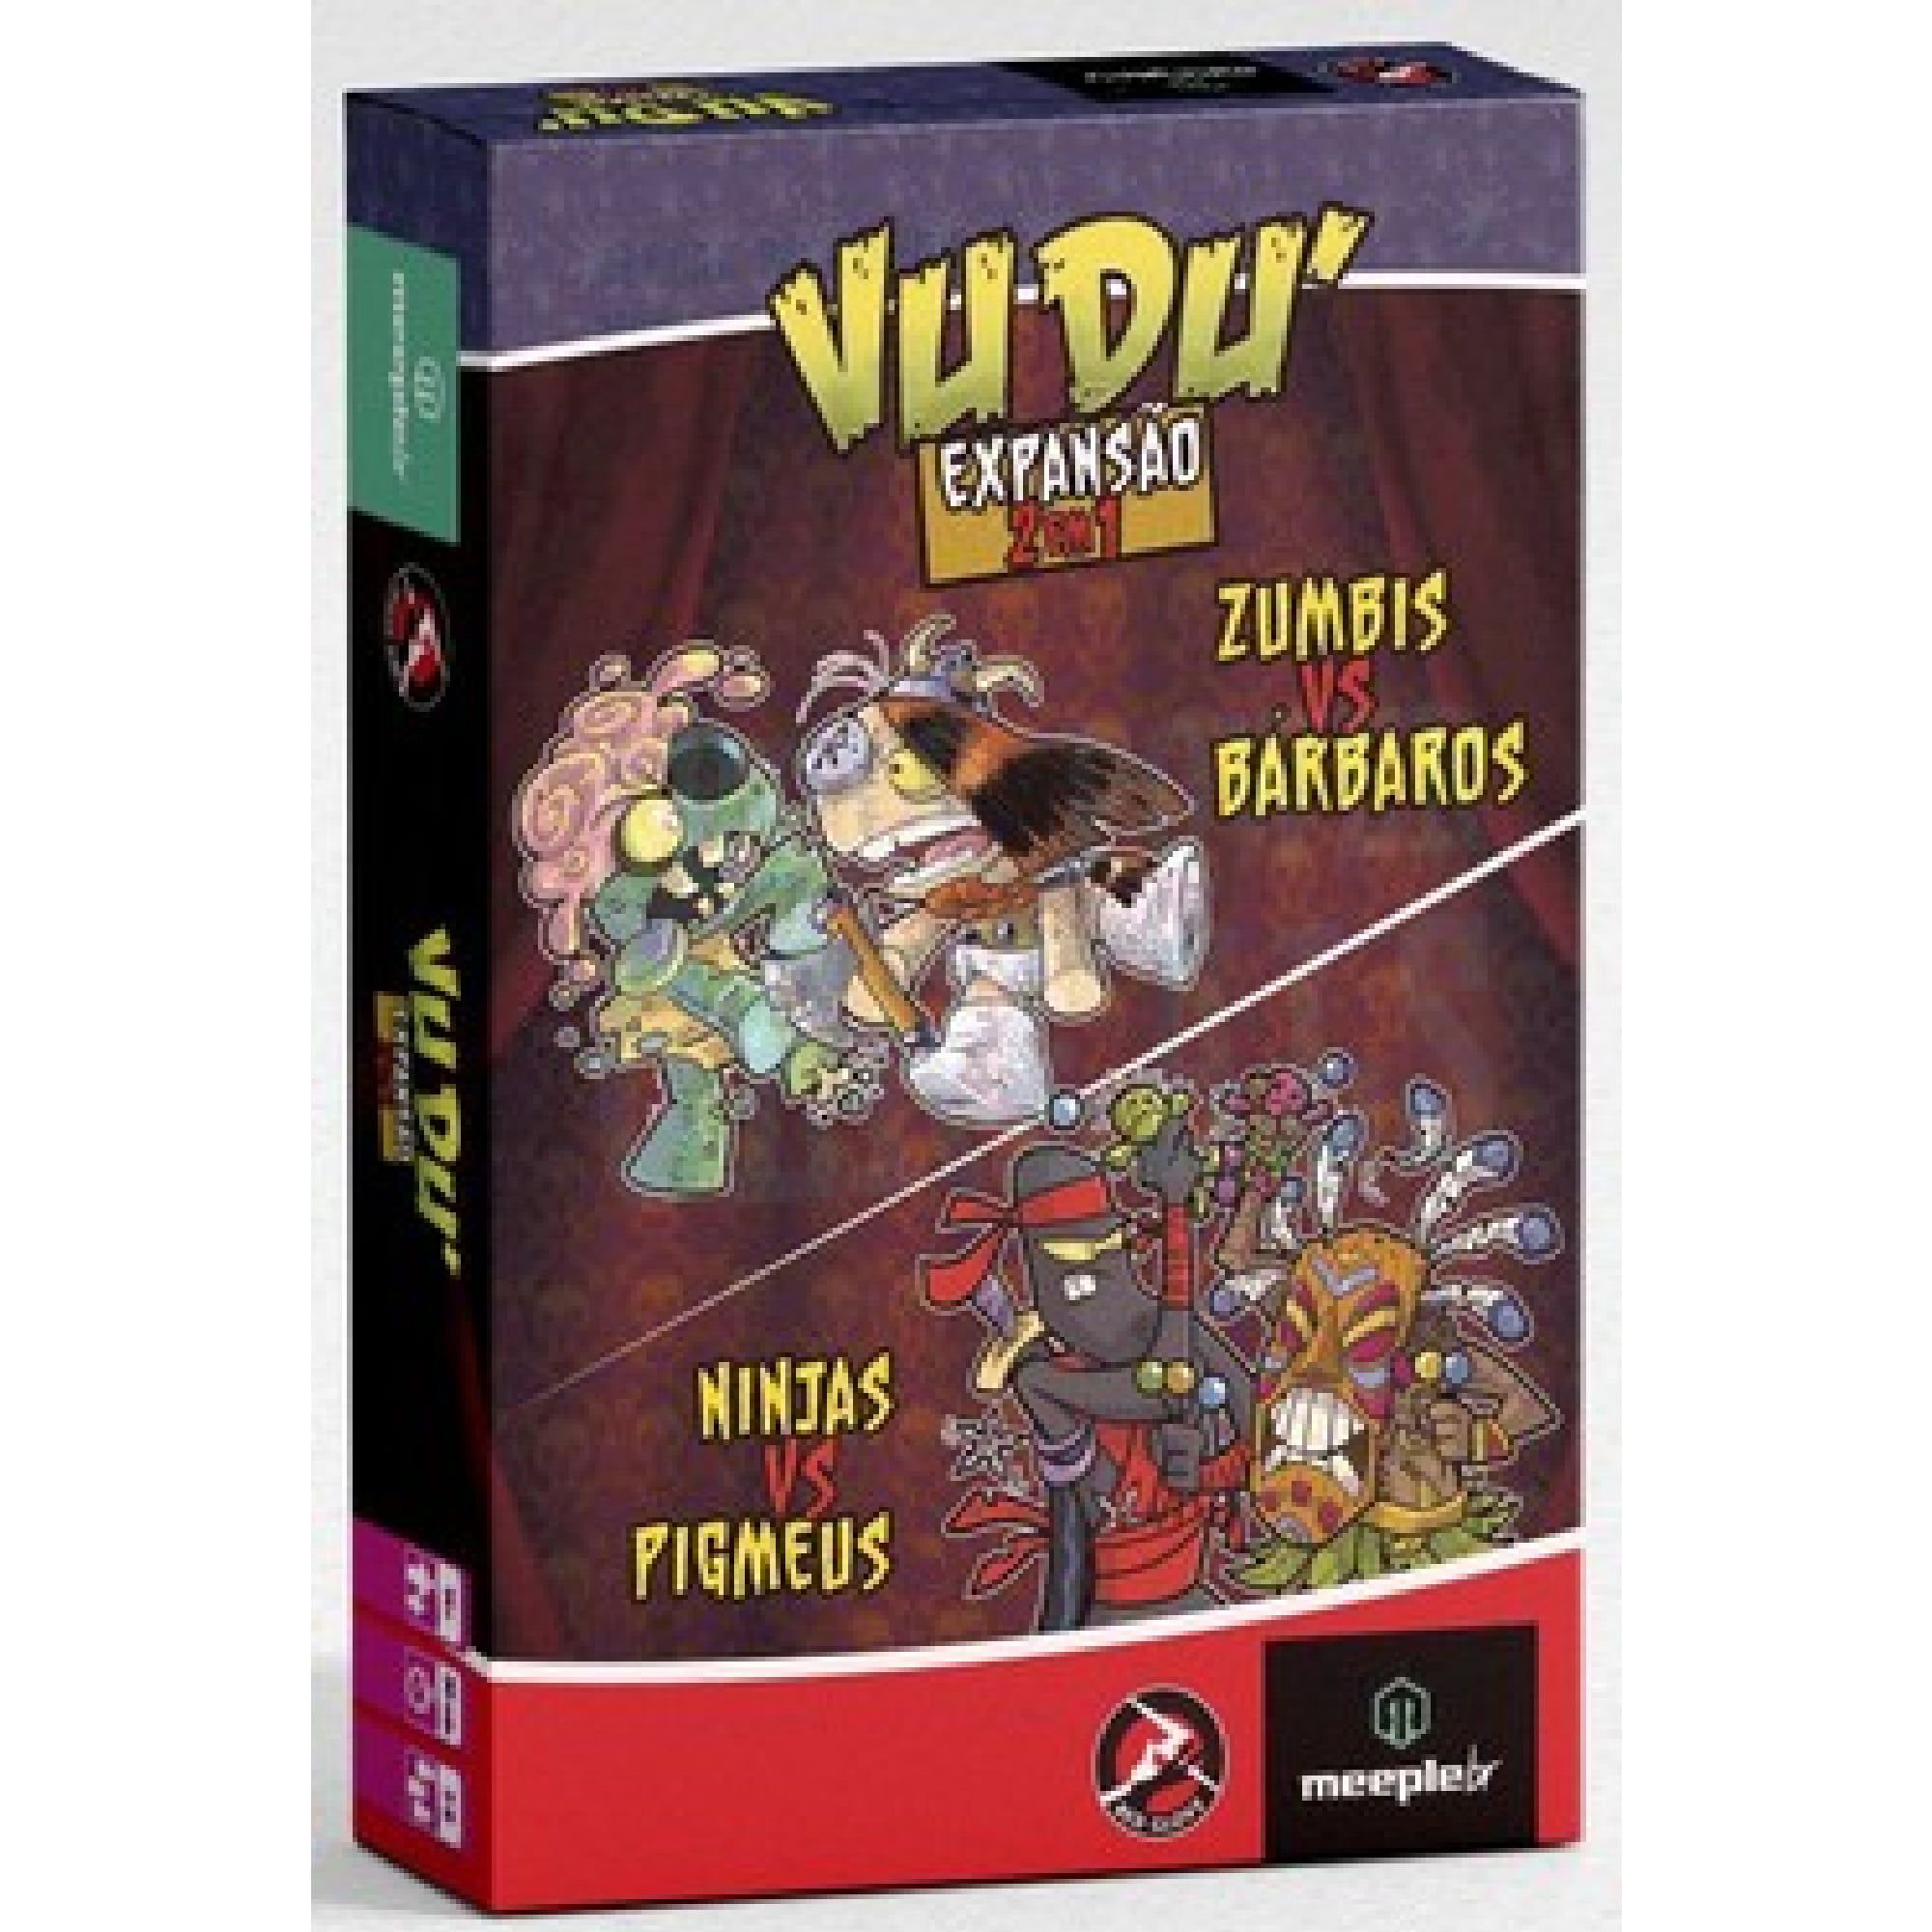 Vudu - Expansão 2 em 1 - Zumbis vs Bárbaros e Ninjas vs Pigmeus